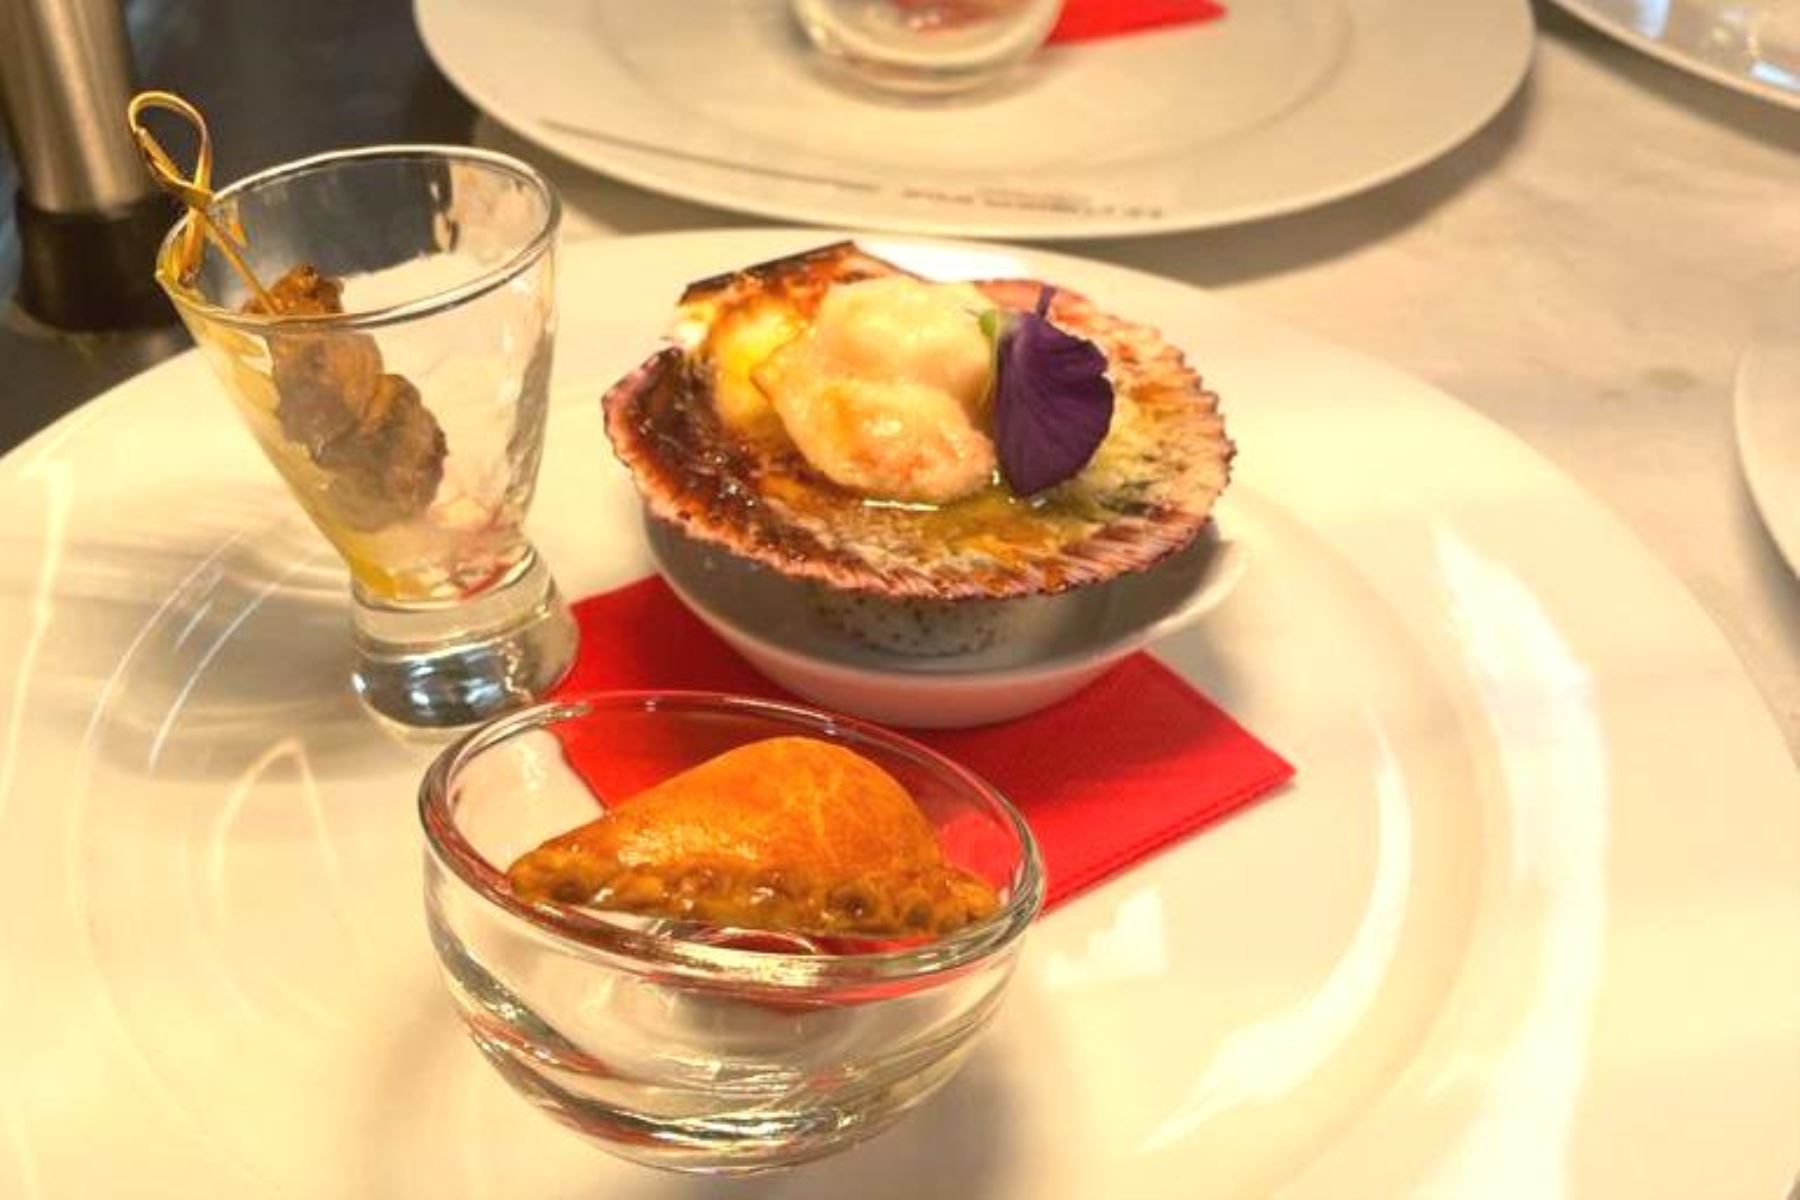 Gastronomía peruana se luce en almuerzo organizado en el Principado de Mónaco.